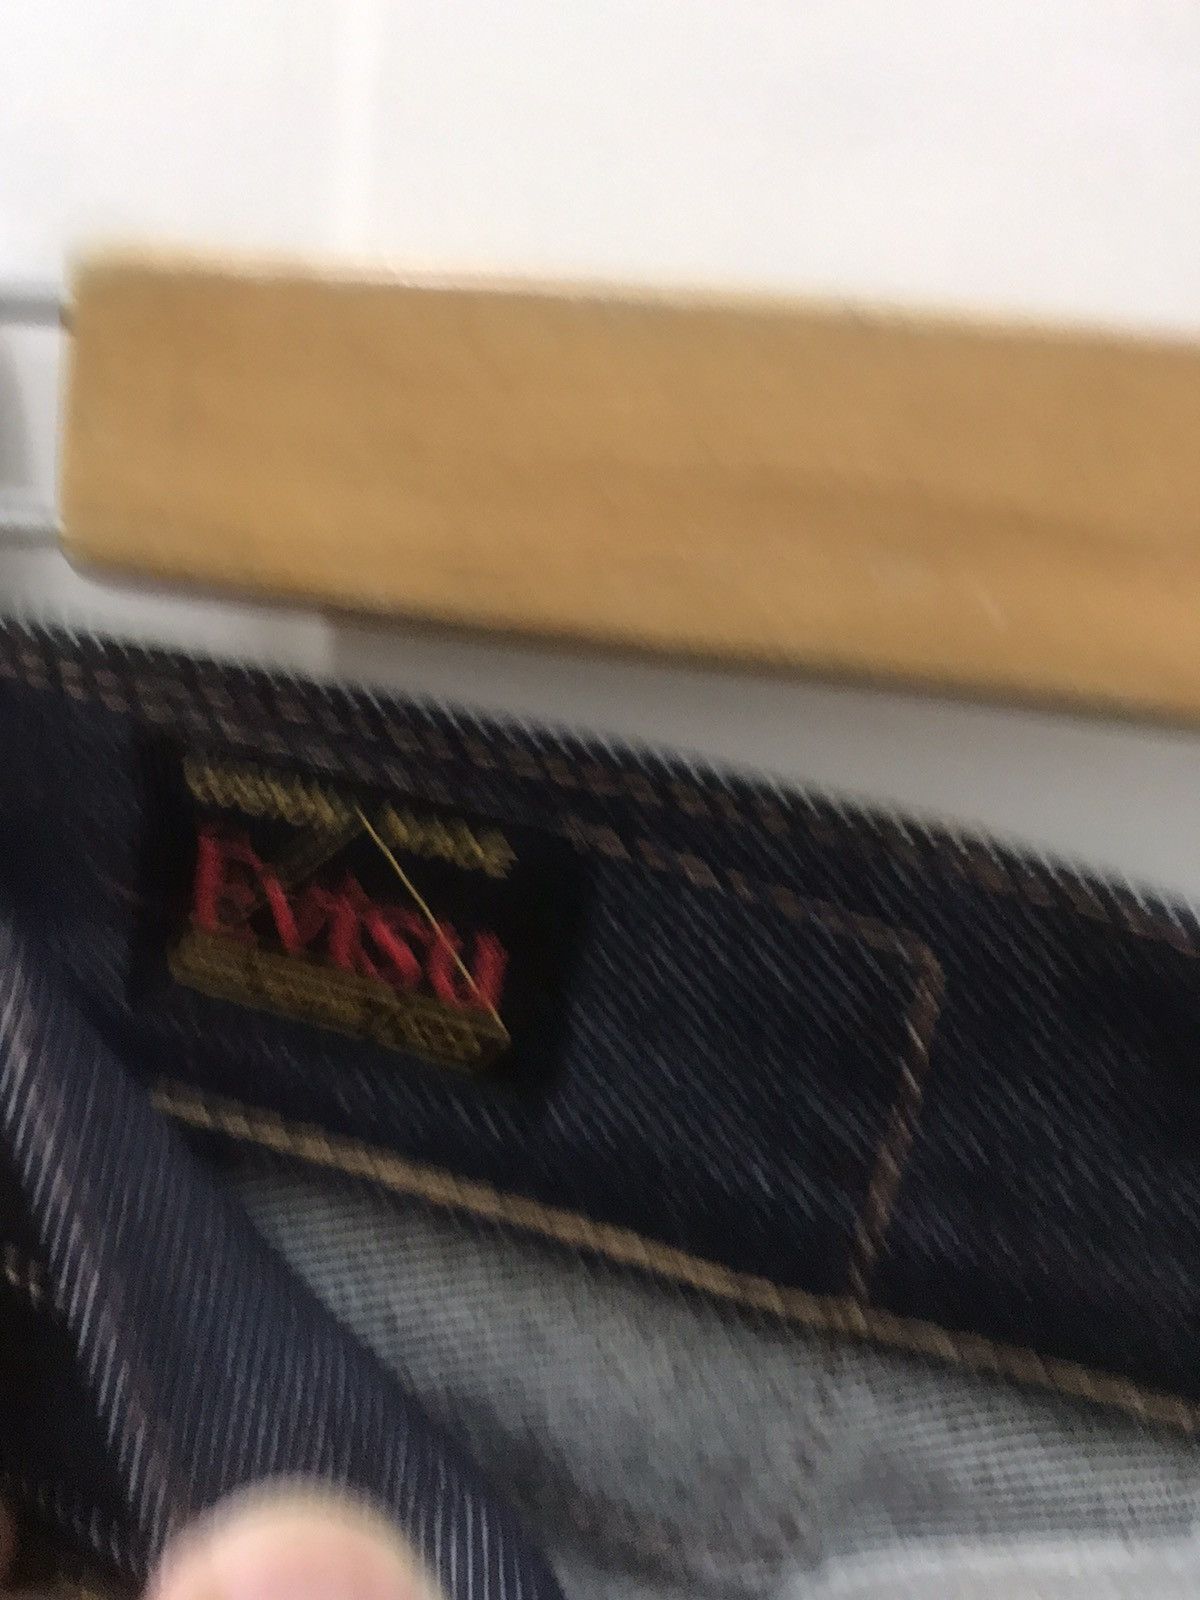 Evisu Limited edition evisu Jeans Size US 30 / EU 46 - 10 Preview